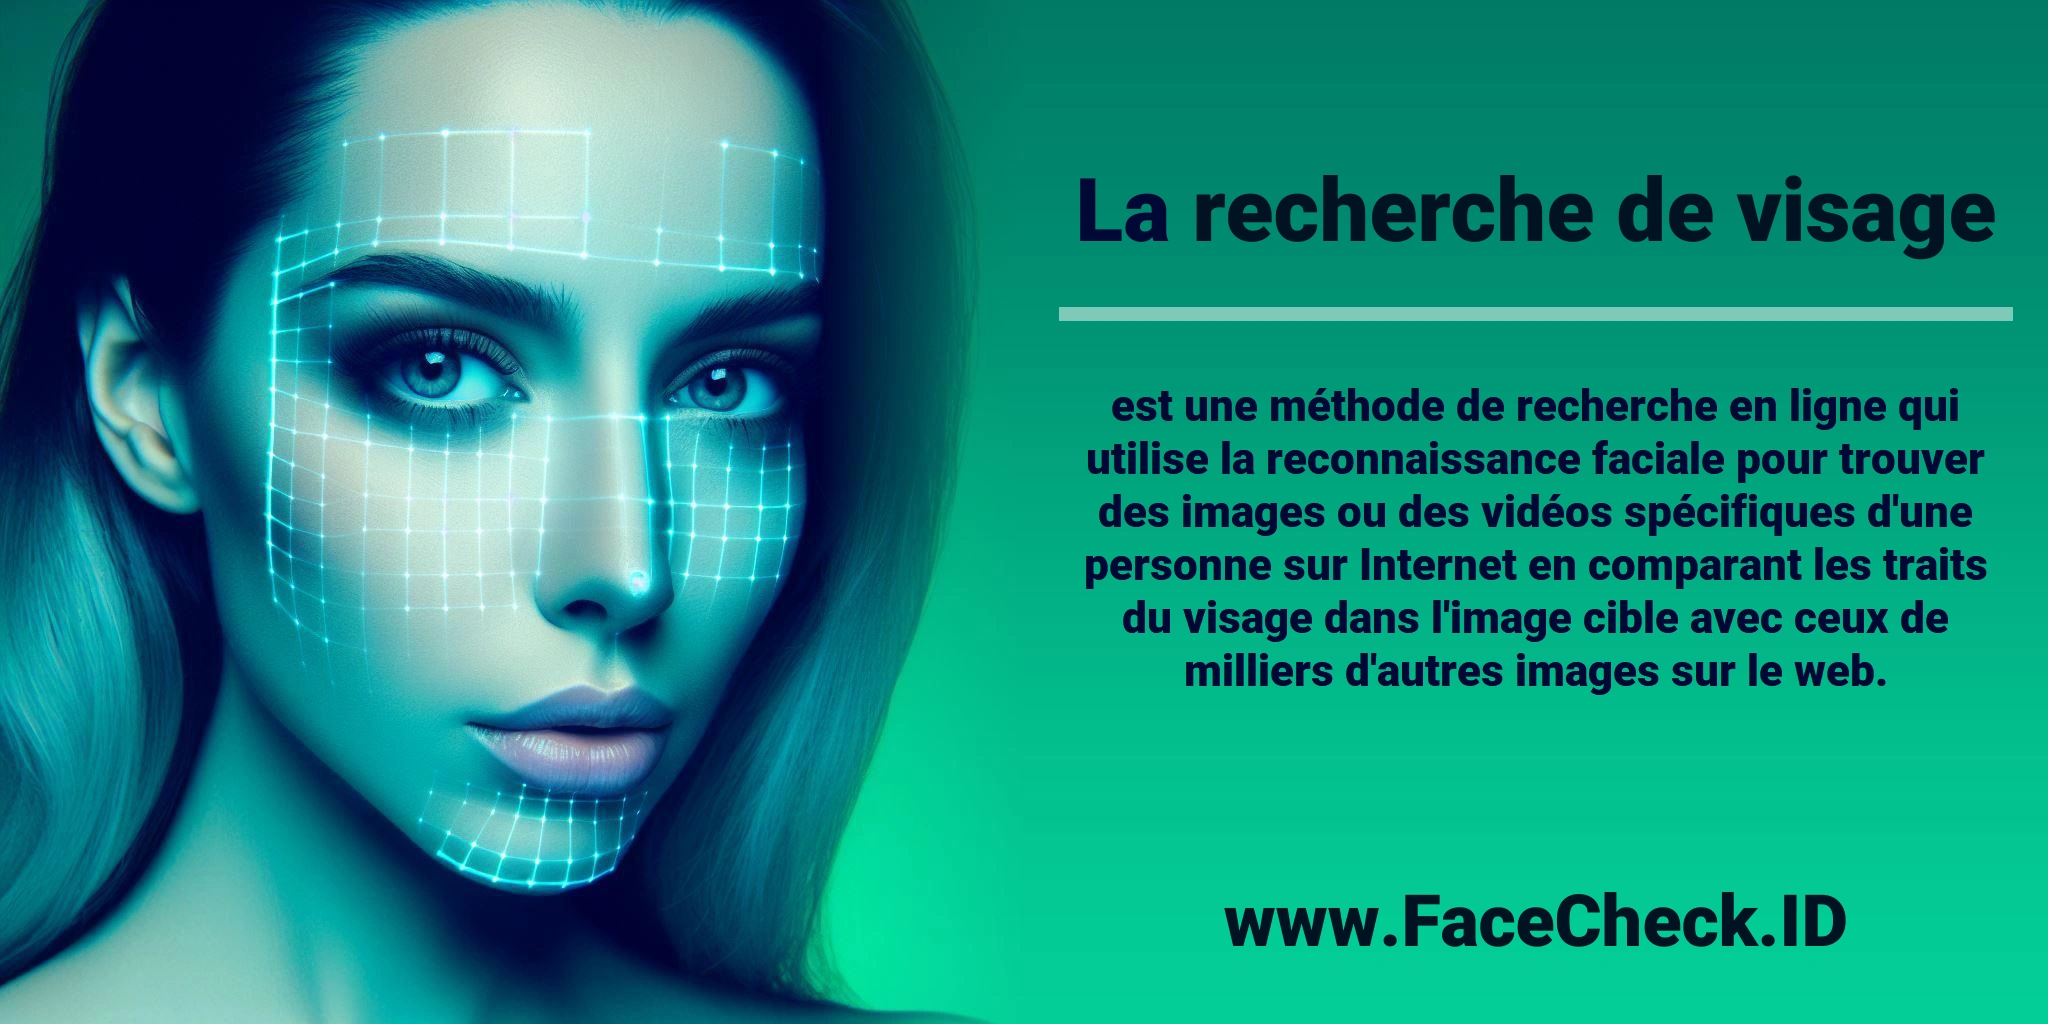 La <b>recherche de visage</b> est une méthode de recherche en ligne qui utilise la reconnaissance faciale pour trouver des images ou des vidéos spécifiques d'une personne sur Internet en comparant les traits du visage dans l'image cible avec ceux de milliers d'autres images sur le web.